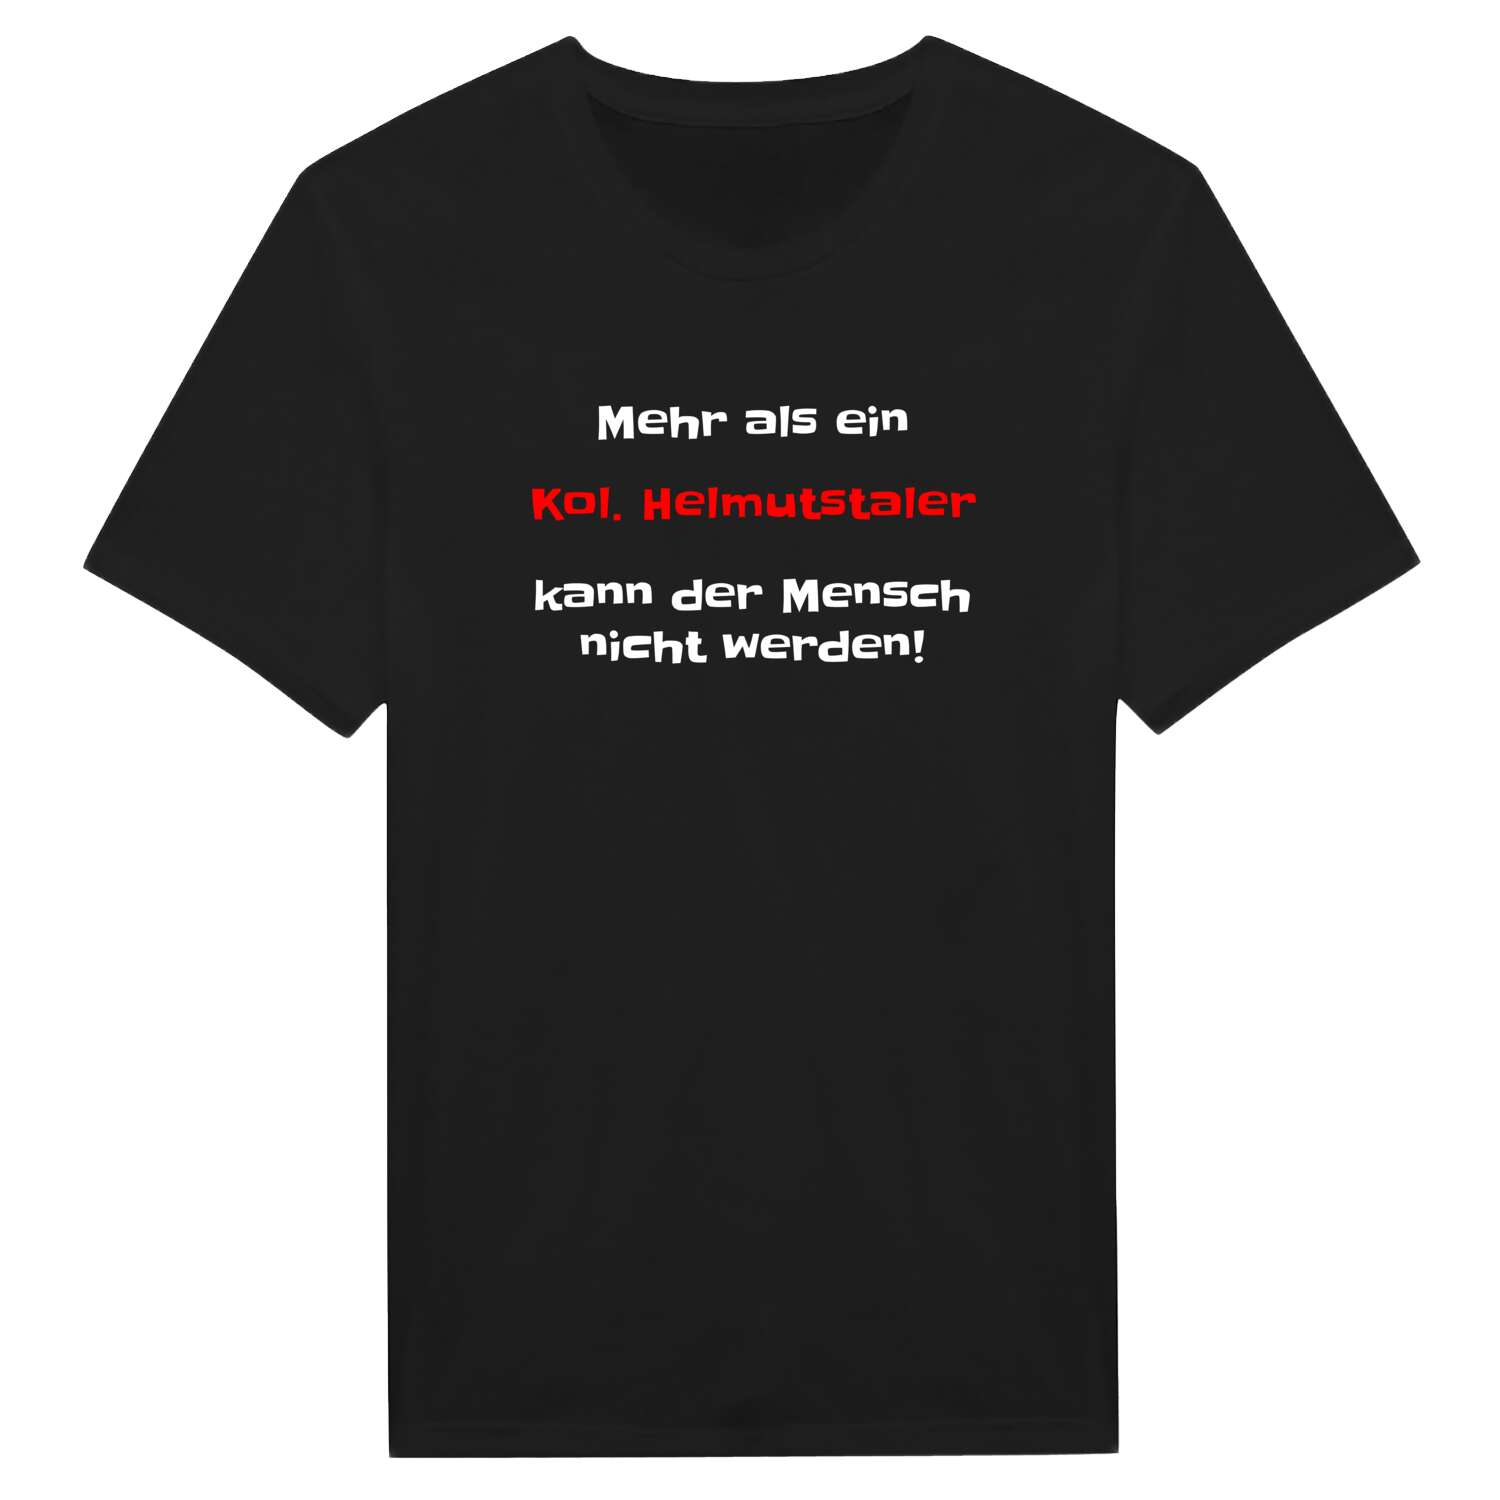 Kol. Helmutstal T-Shirt »Mehr als ein«